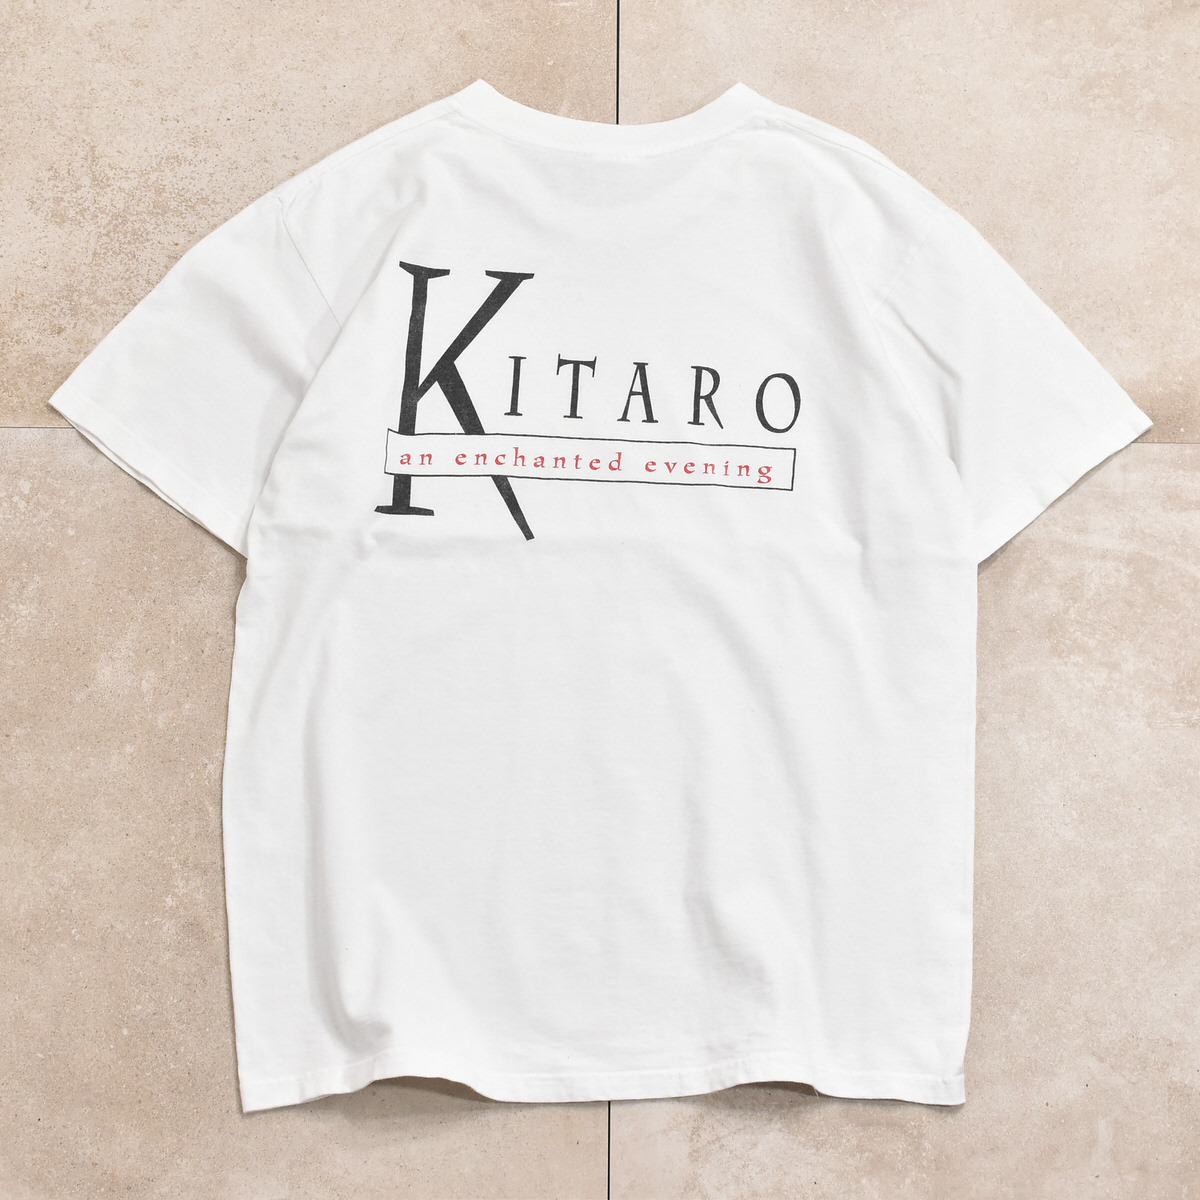 90s KITARO music T-shirtメンズ XL相当 90s 喜太郎 天空への響き ミュージック Tシャツ ニューエイジ バンドT 音モノ_画像3